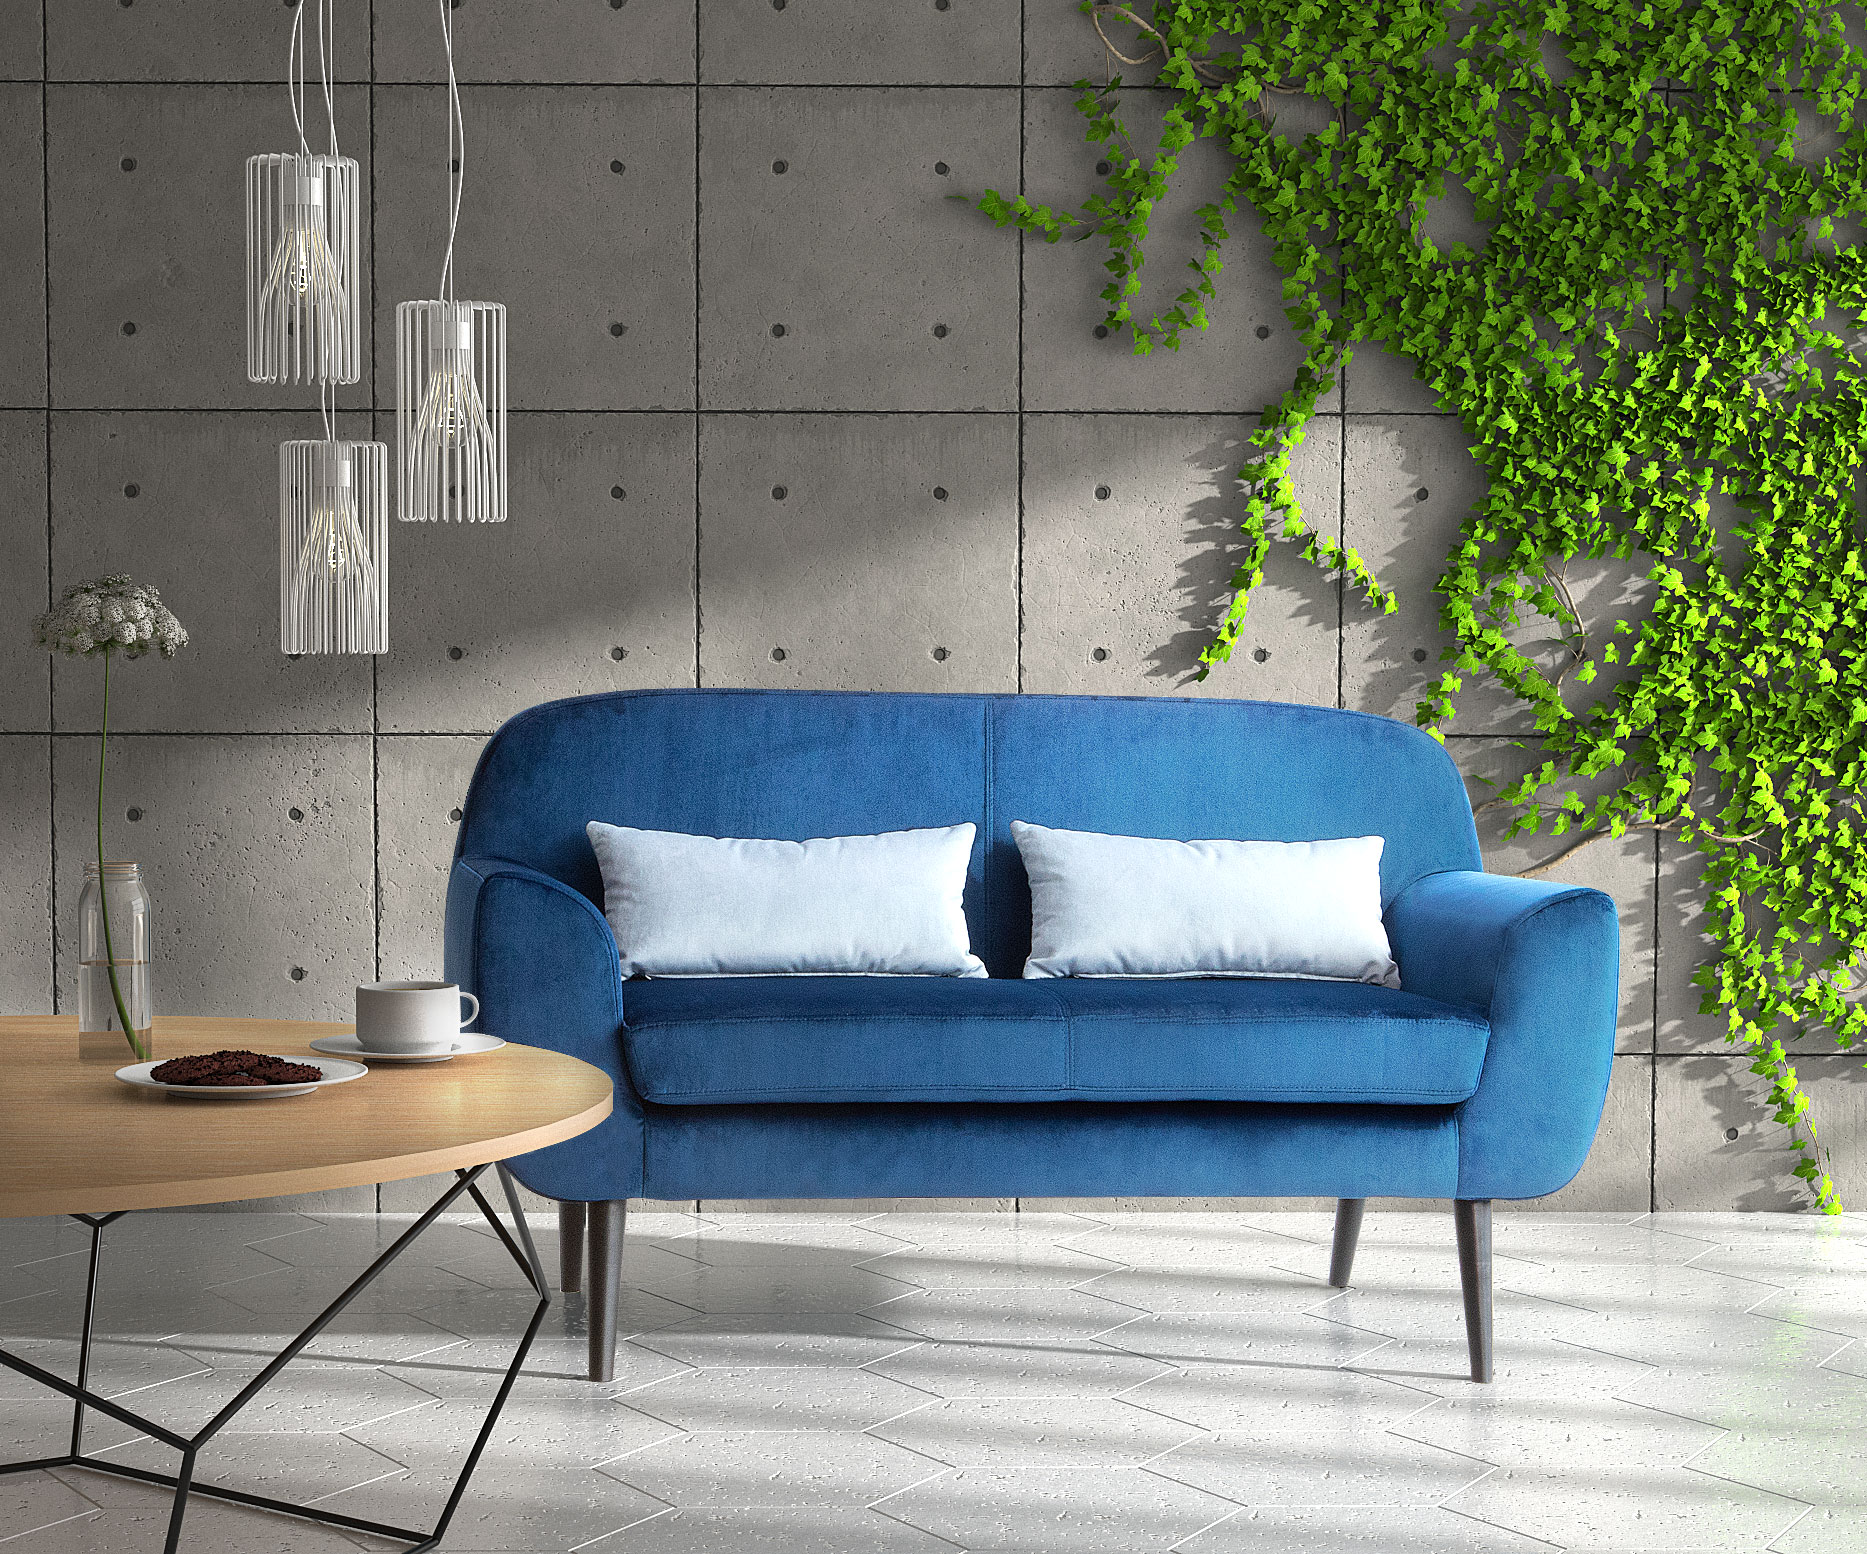 Polaszek Meble Nowoczesny salon z niebieską sofą Polaszek meble, betonowymi ścianami i wiszącymi roślinami. Chojnice